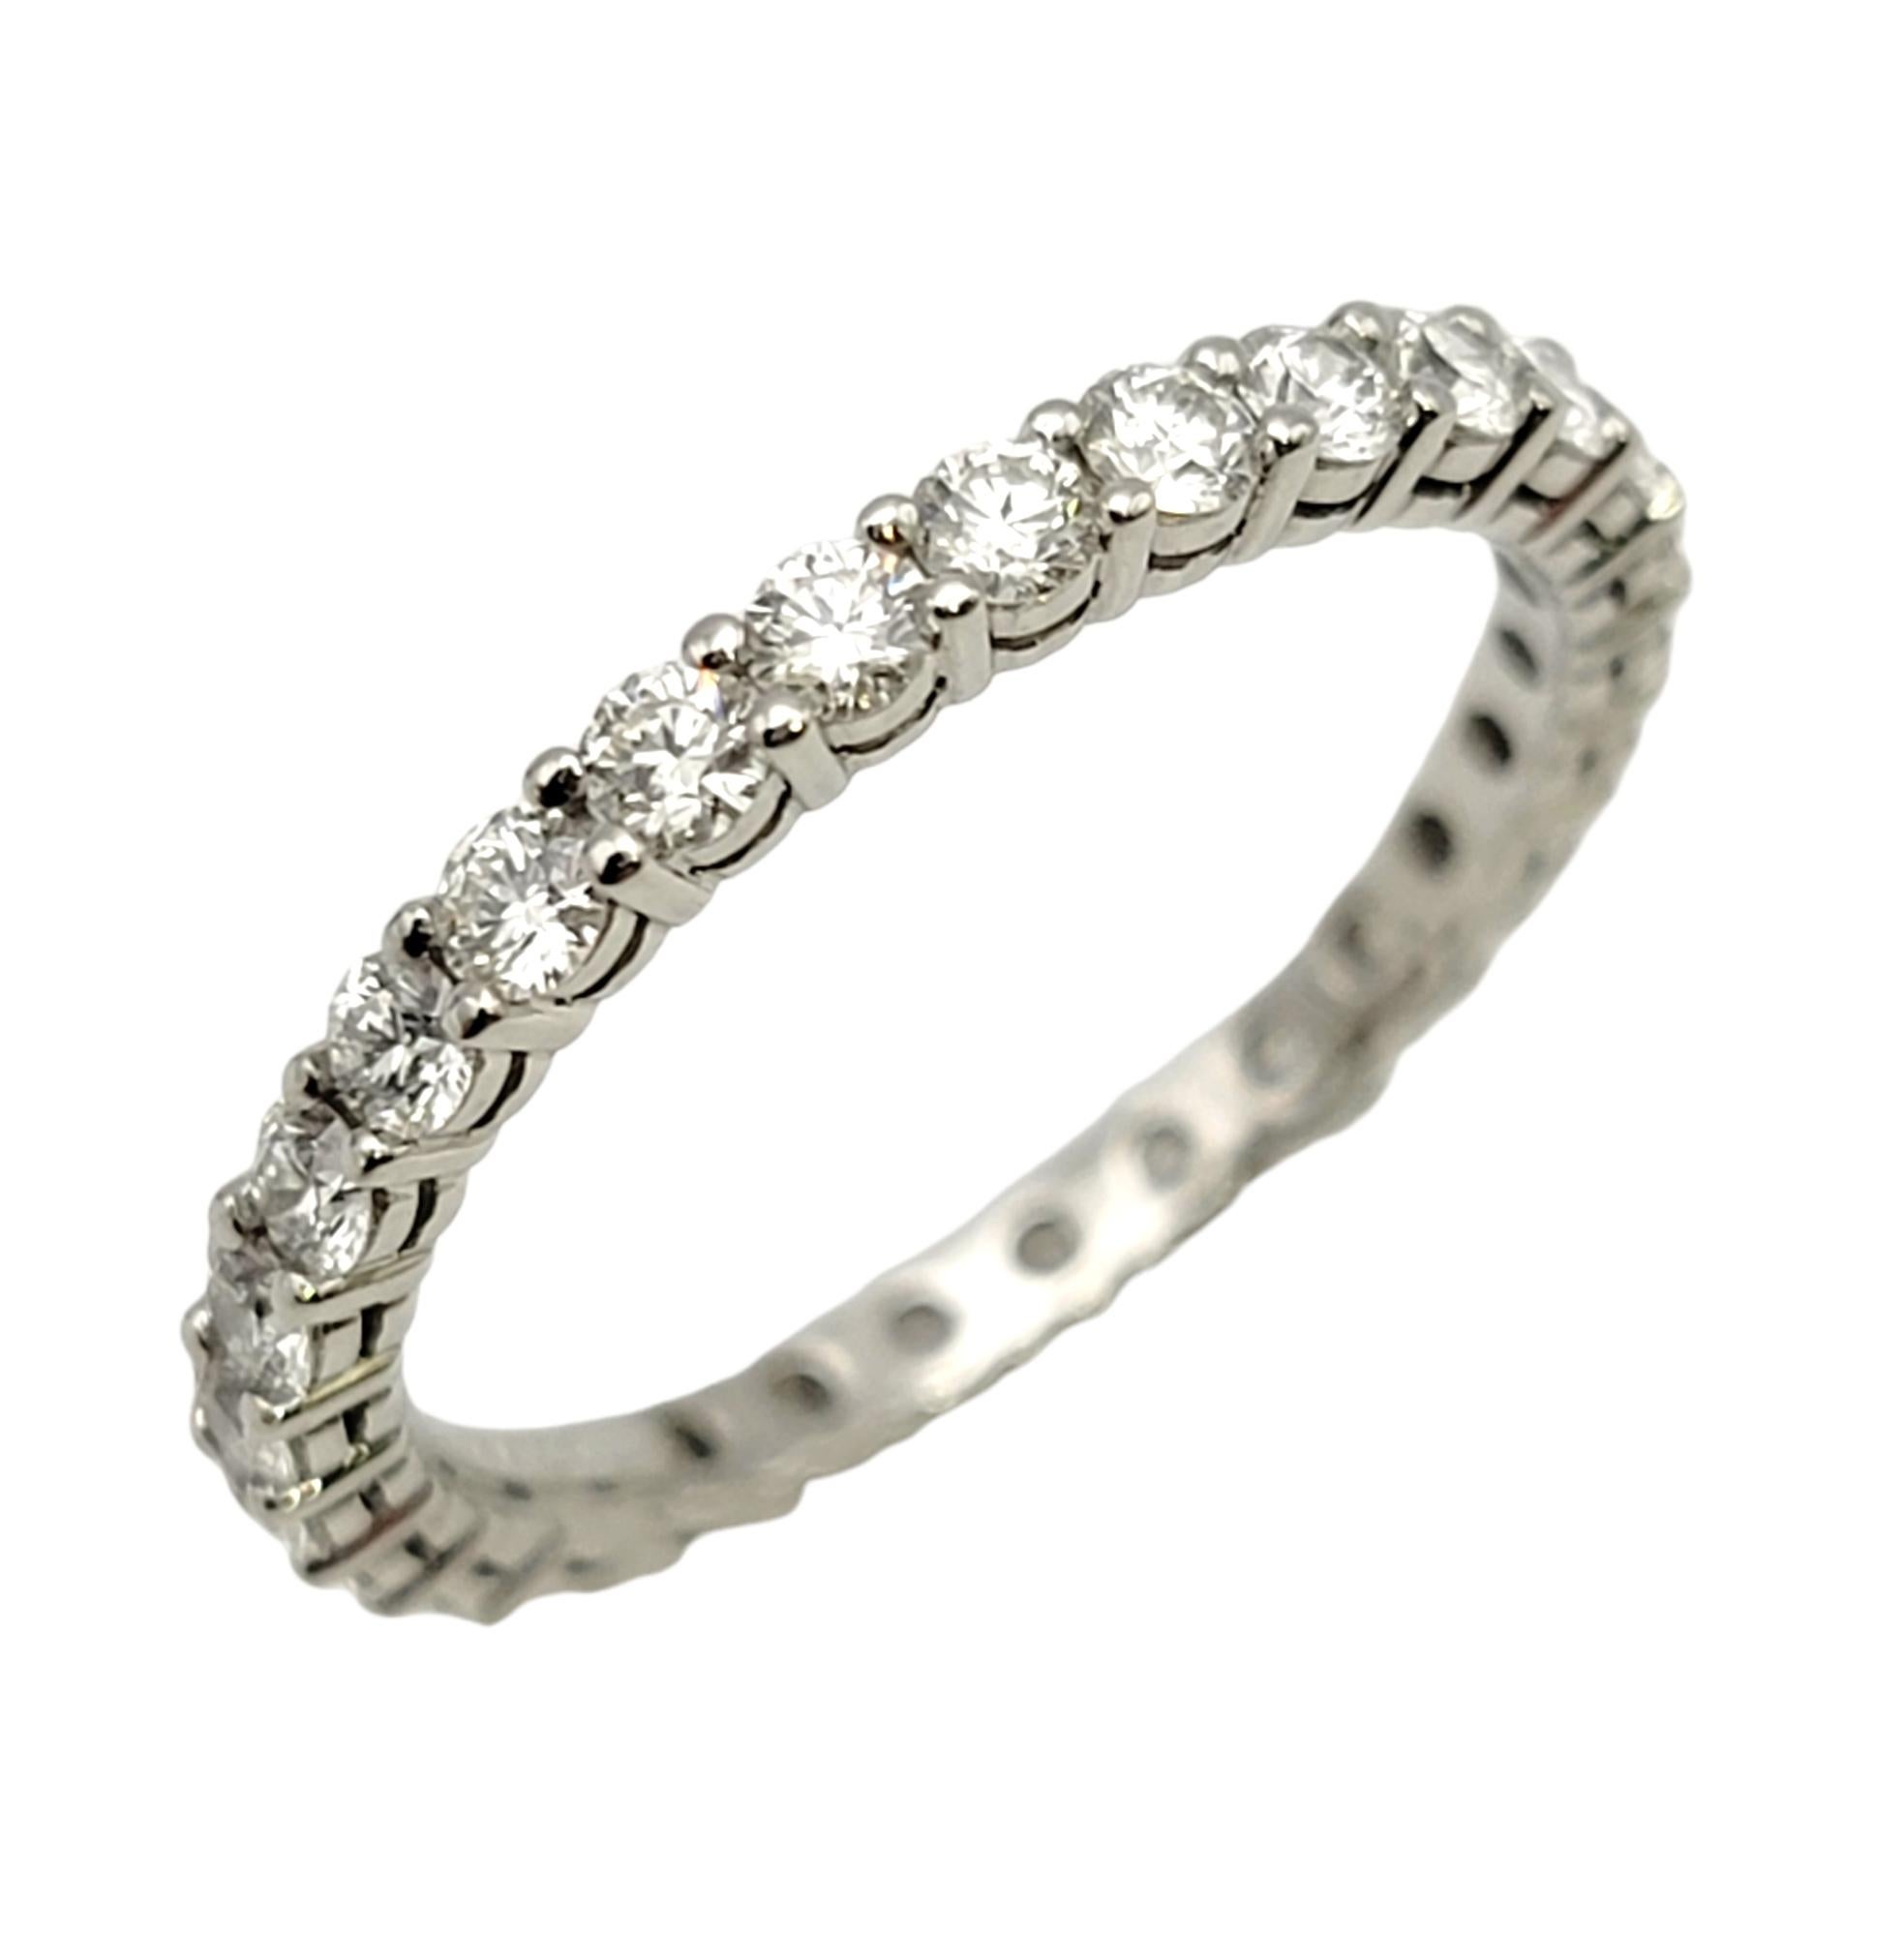 Taille de l'anneau : 5.75

Superbe anneau d'éternité Tiffany & Co. avec diamants 